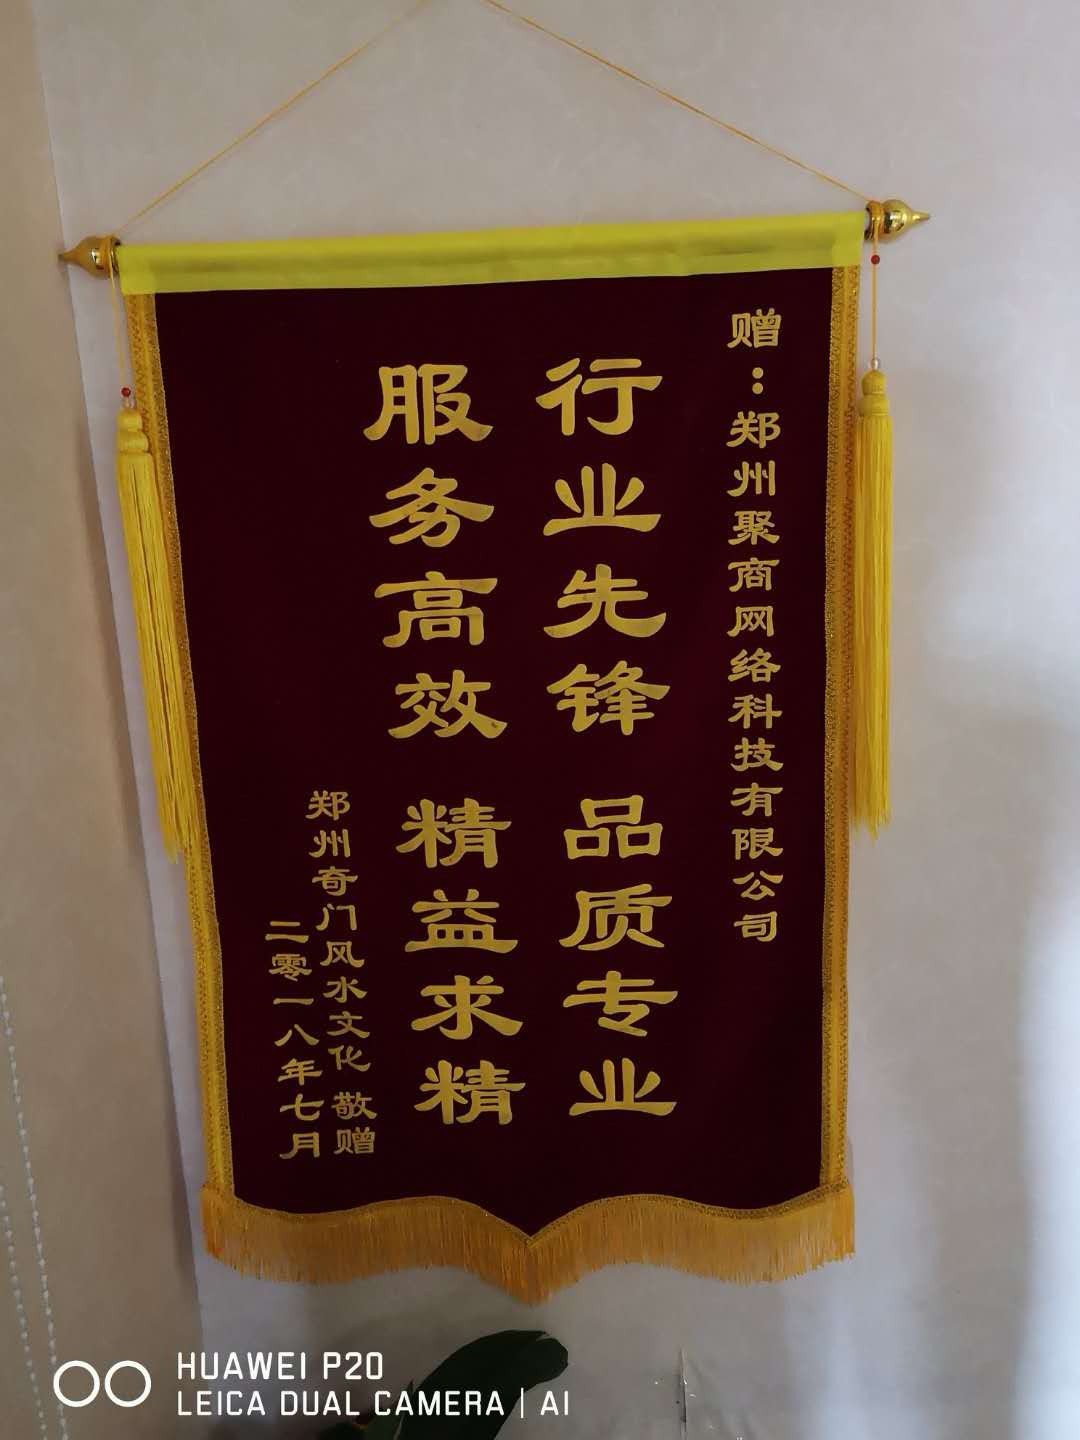 鄭州奇門文化傳播有限公司贈送的錦旗